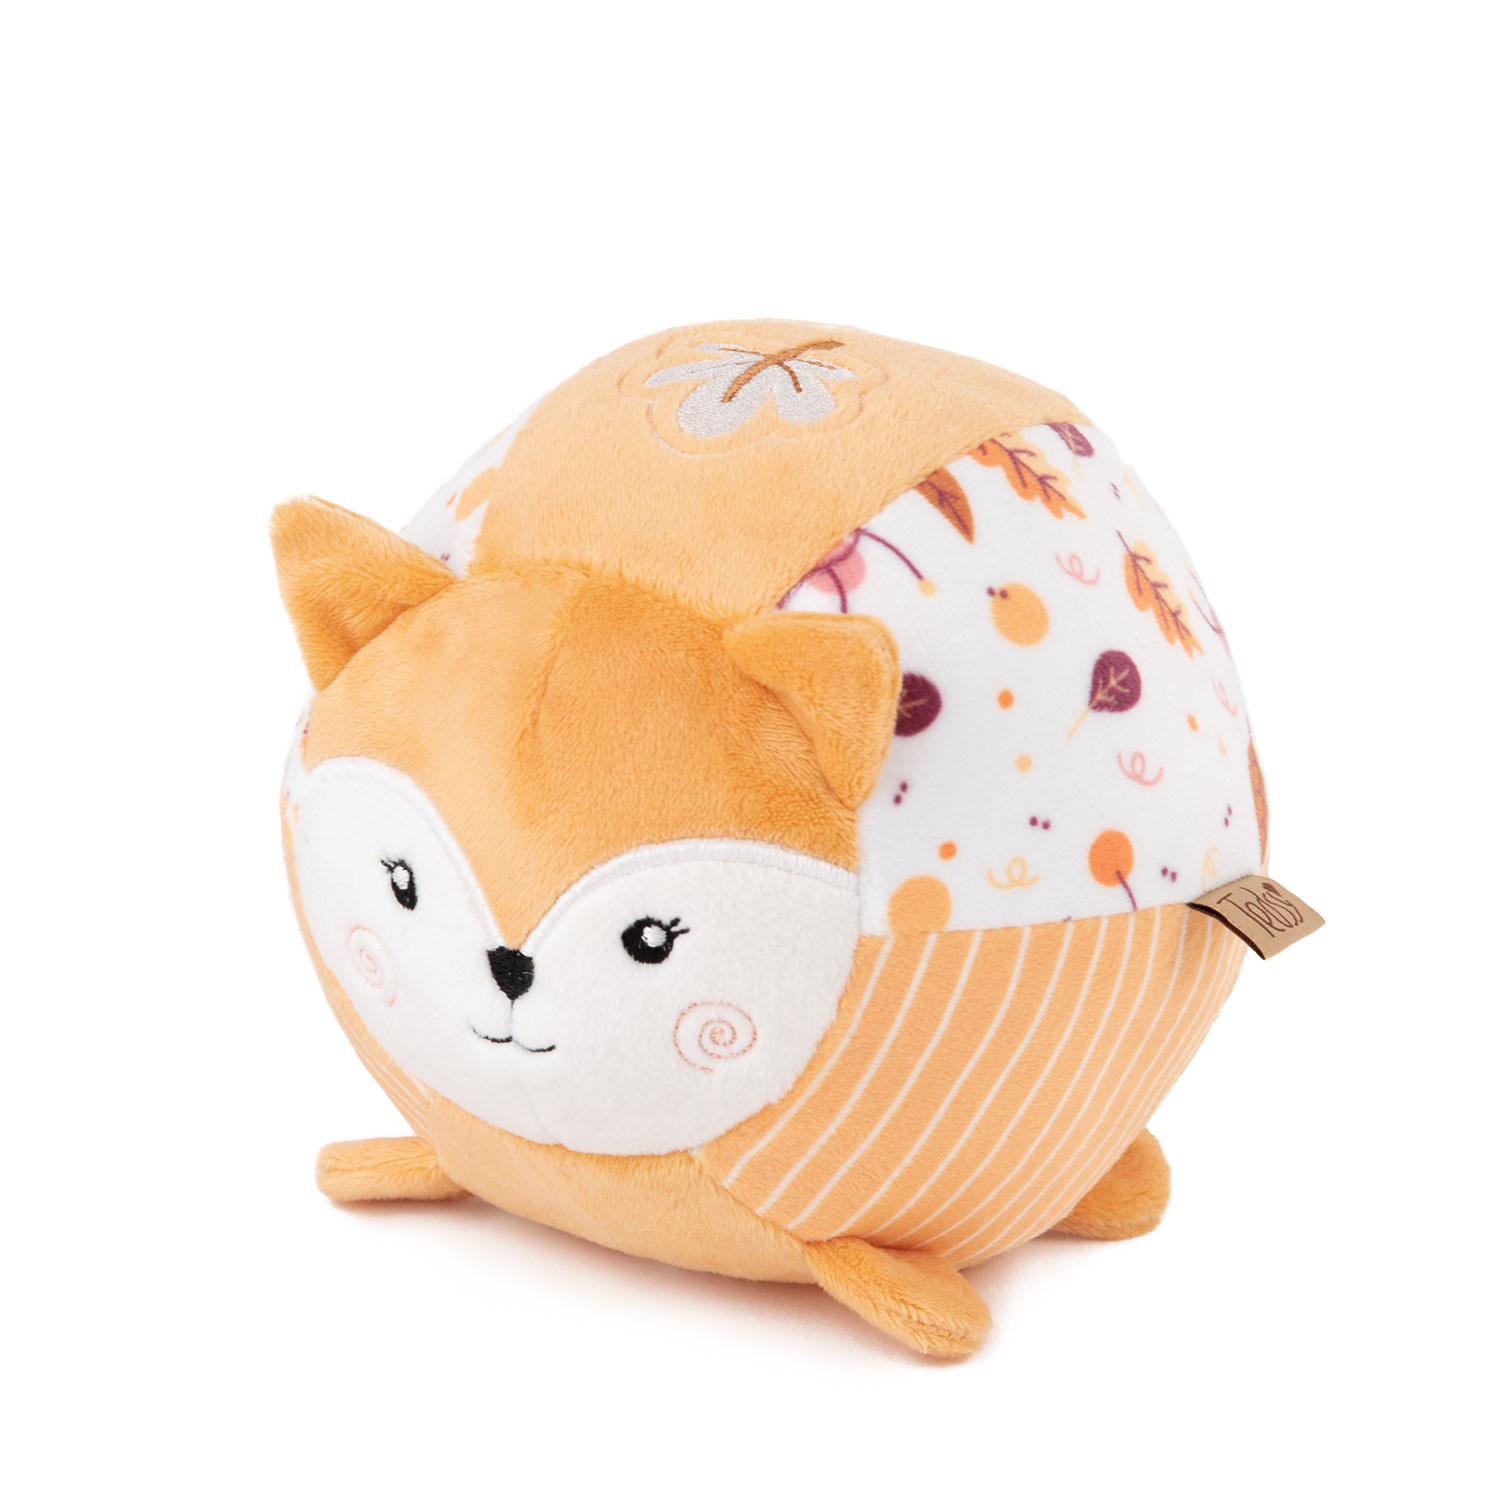 Soft baby round toy - Fox